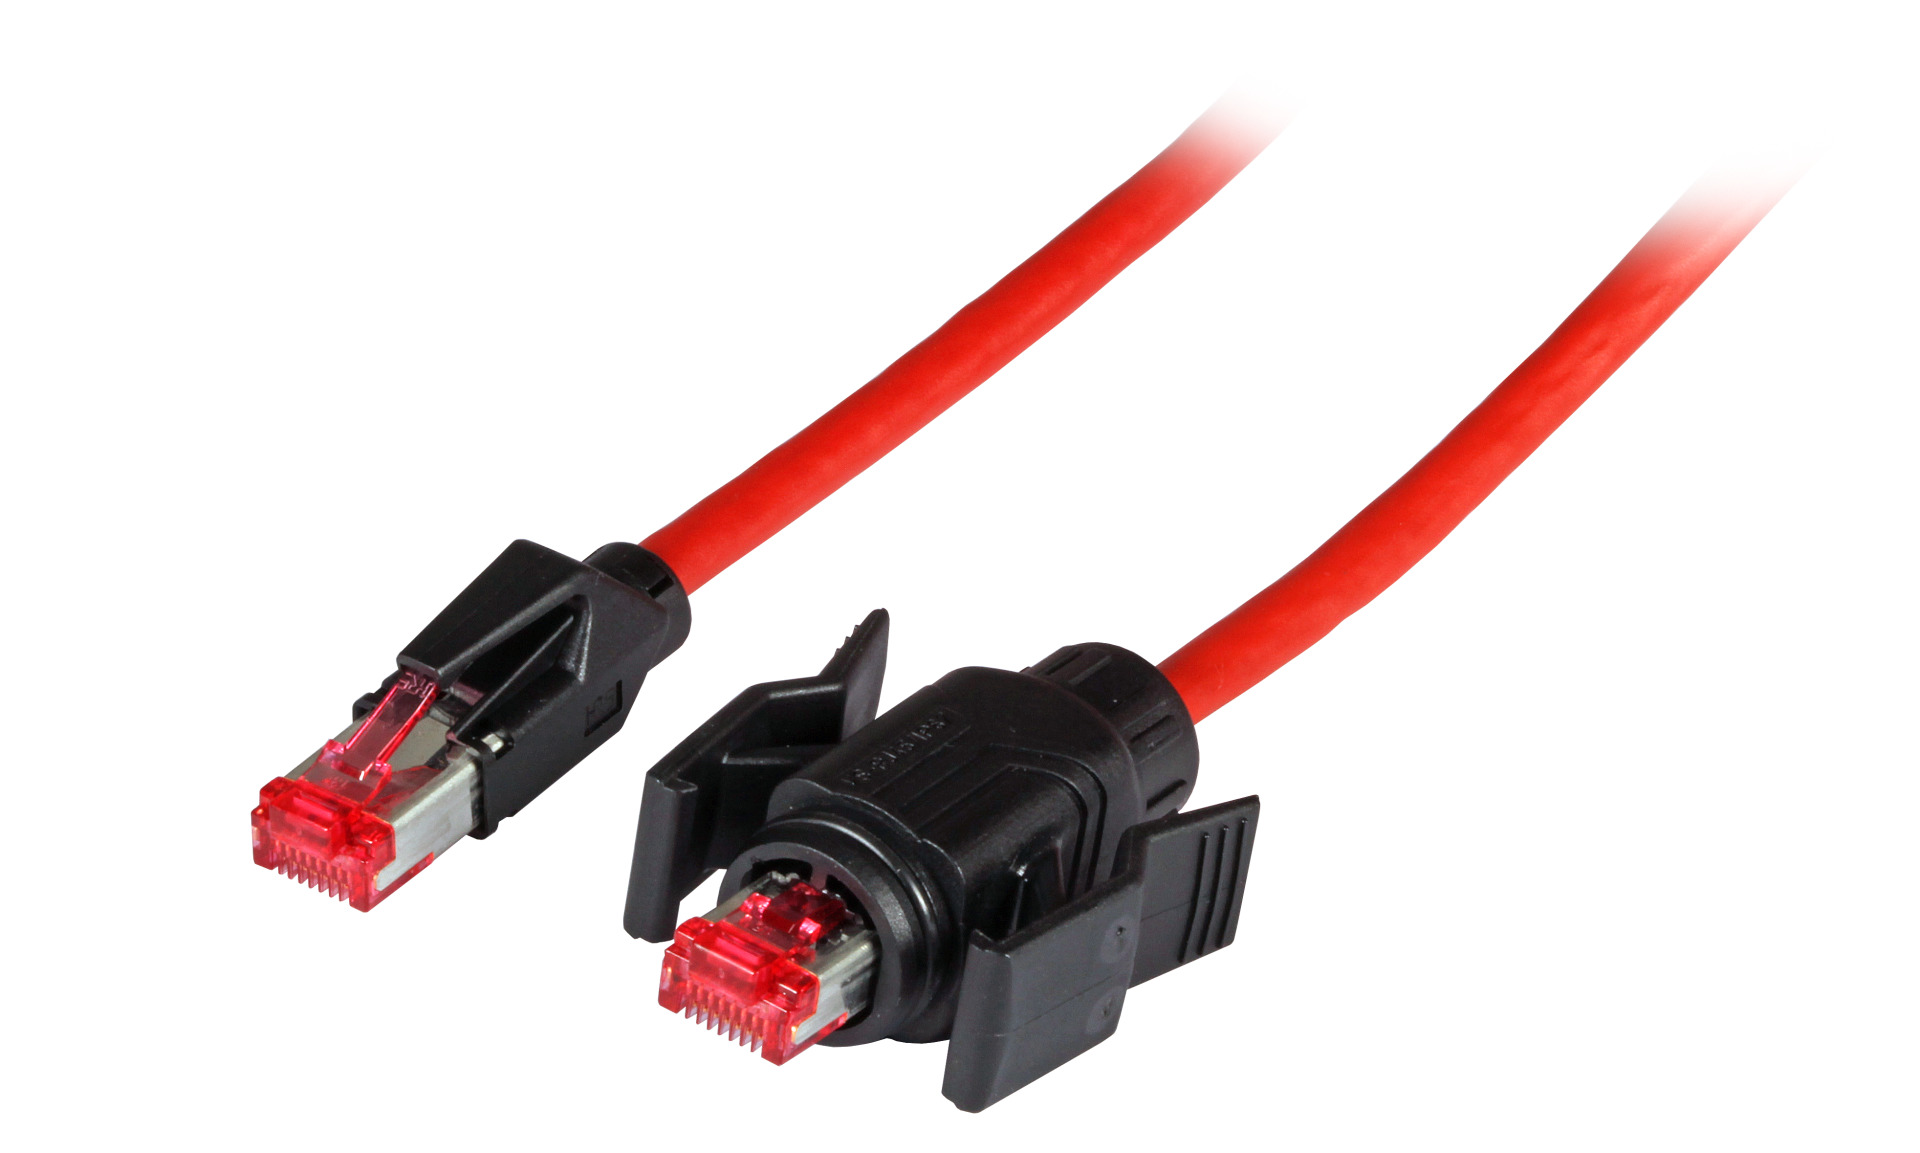 RJ45 Patch cable S/FTP, Cat.6A, IP67/TM21 / TM21, PUR, for 53730.1V2, 2m